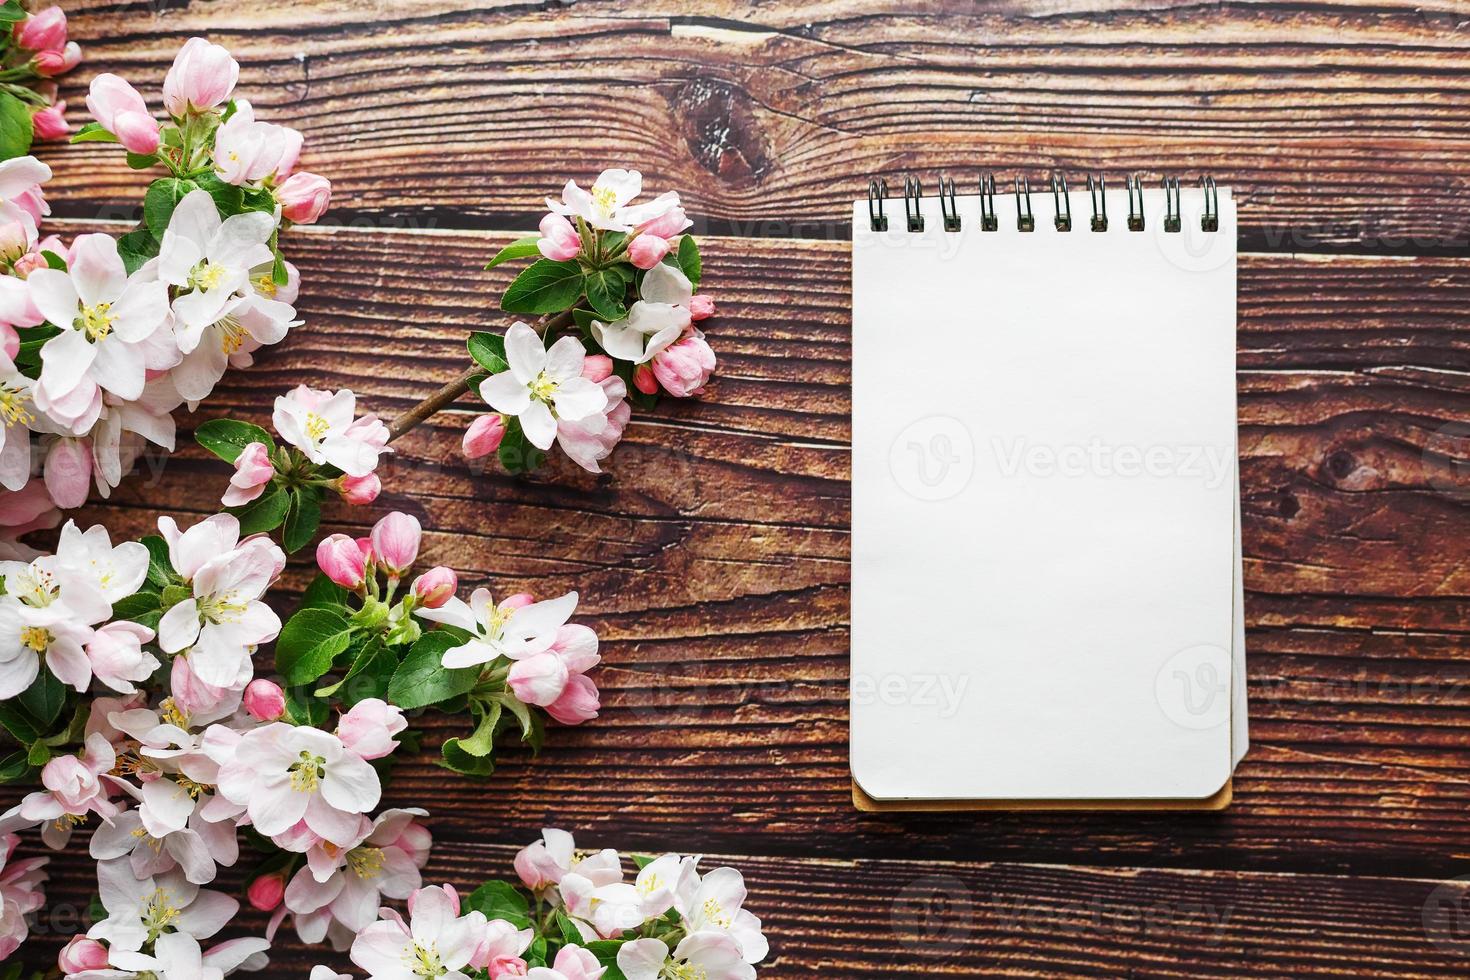 fleurs de sakura sur un fond en bois rustique foncé avec un cahier. fond de printemps avec des branches d'abricot en fleurs et des branches de cerisier photo